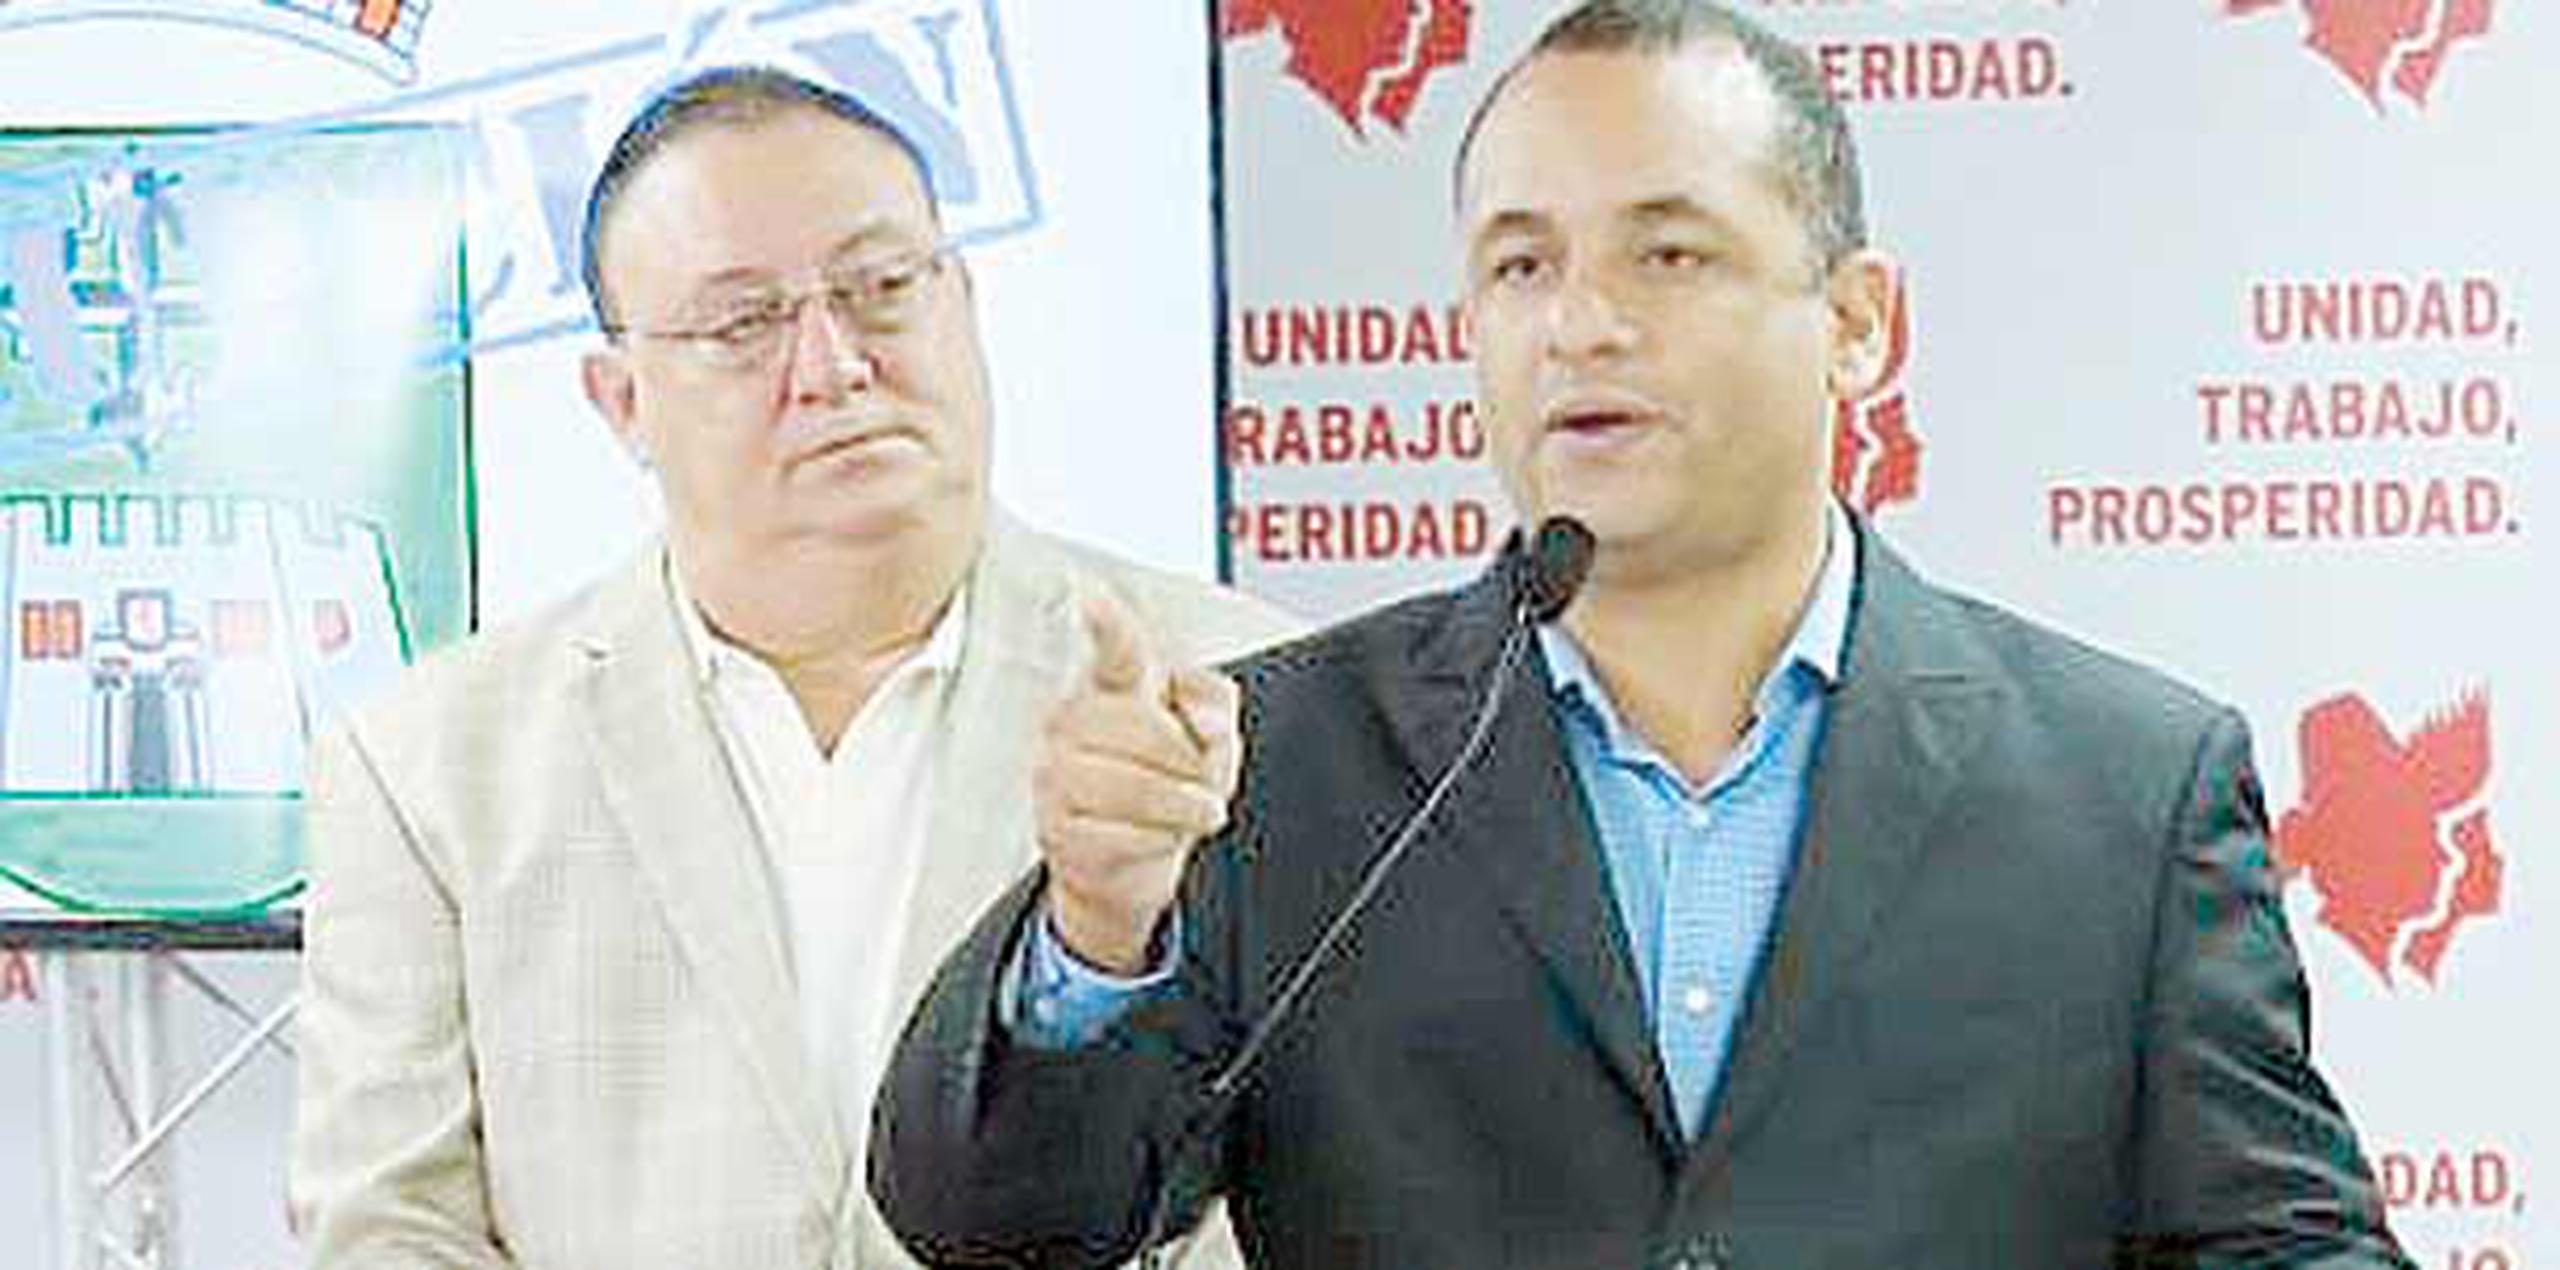 El candidato a alcalde de Guaynabo, Ricardo “Richie” Vicéns Salgado (atrás), presentó querellas en las oficinas de Ética Gubernamental y del Contralor. (Suministrada)